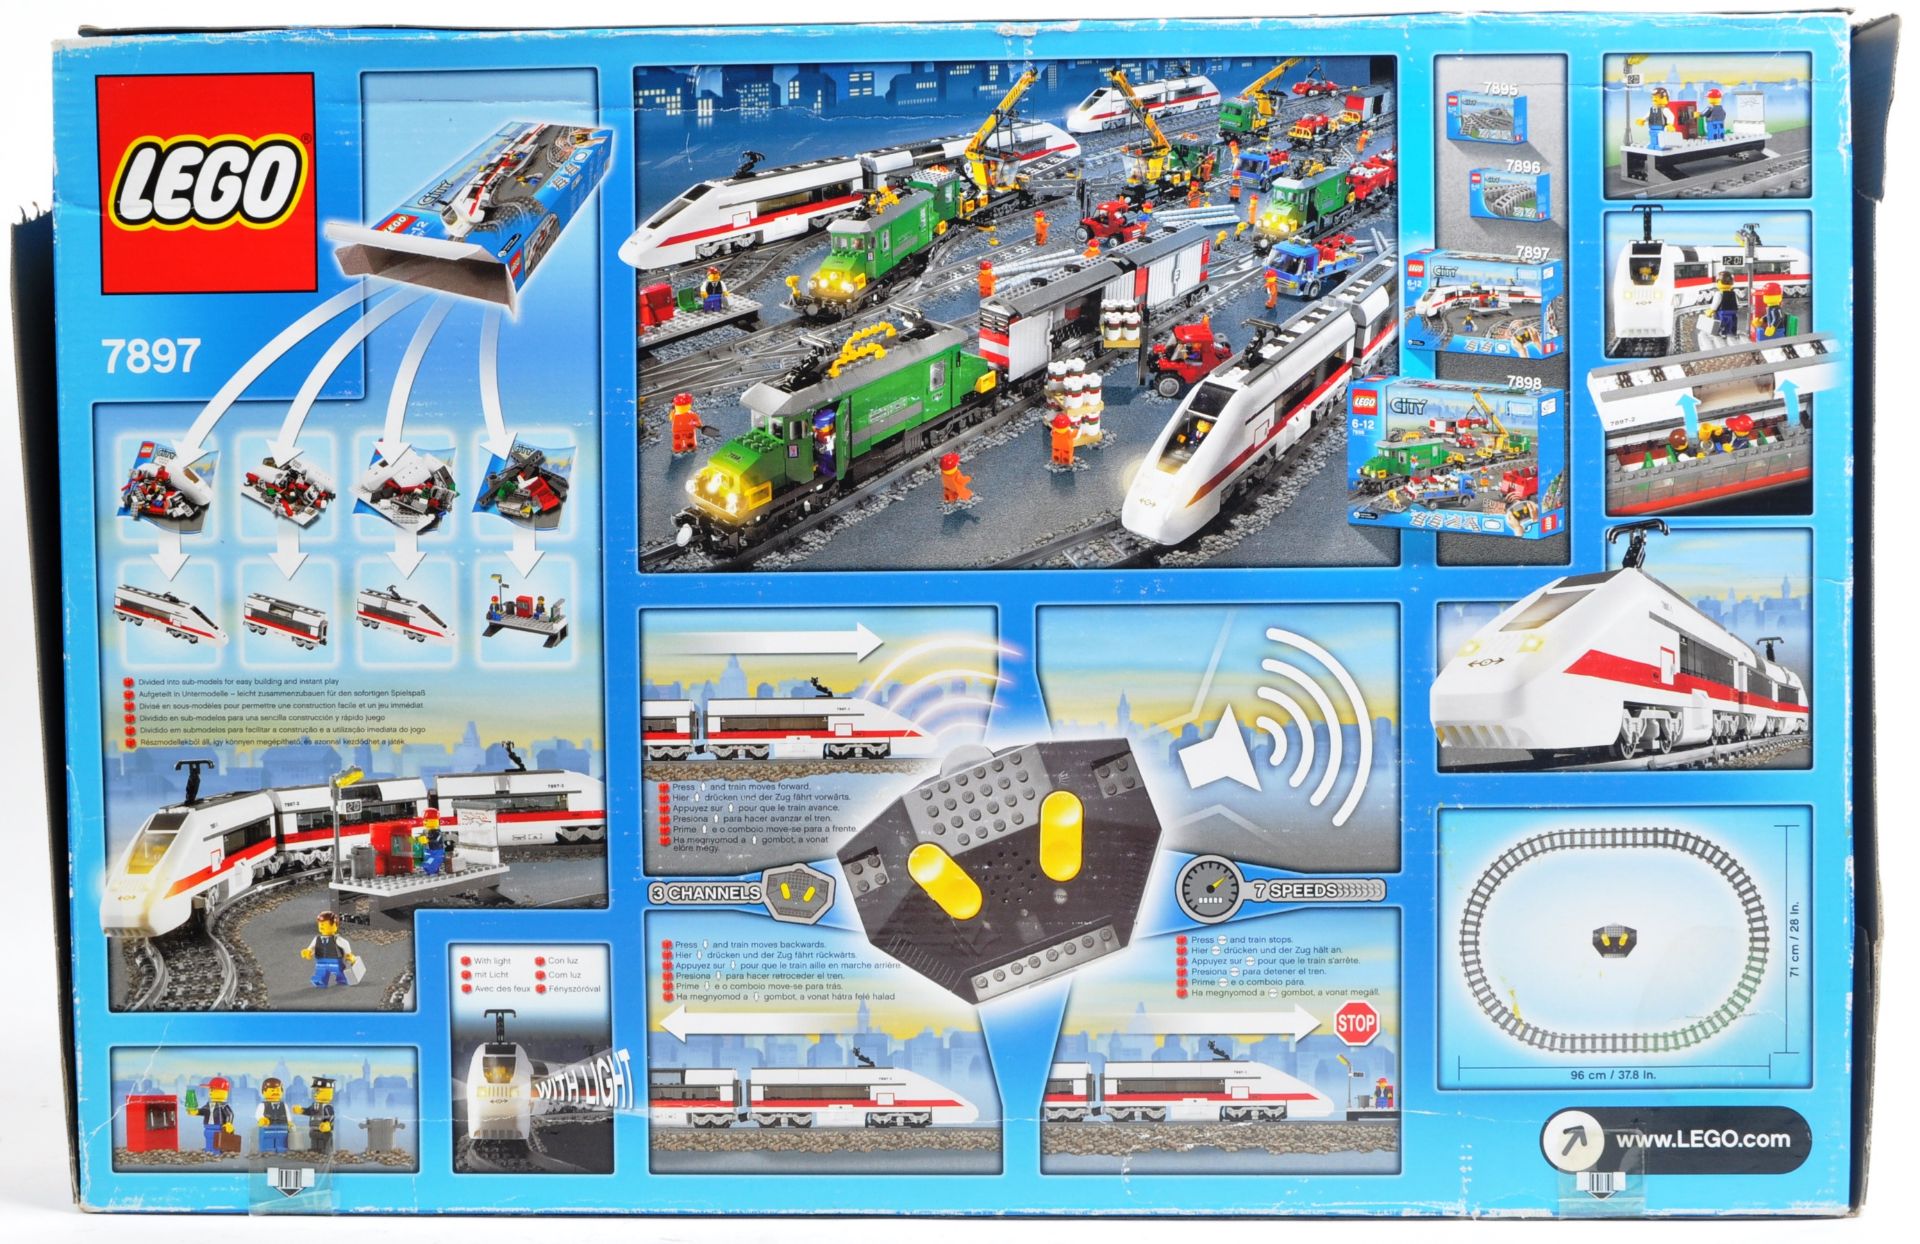 LEGO SET - LEGO CITY - 7897 - PASSENGER TRAIN - Image 2 of 4